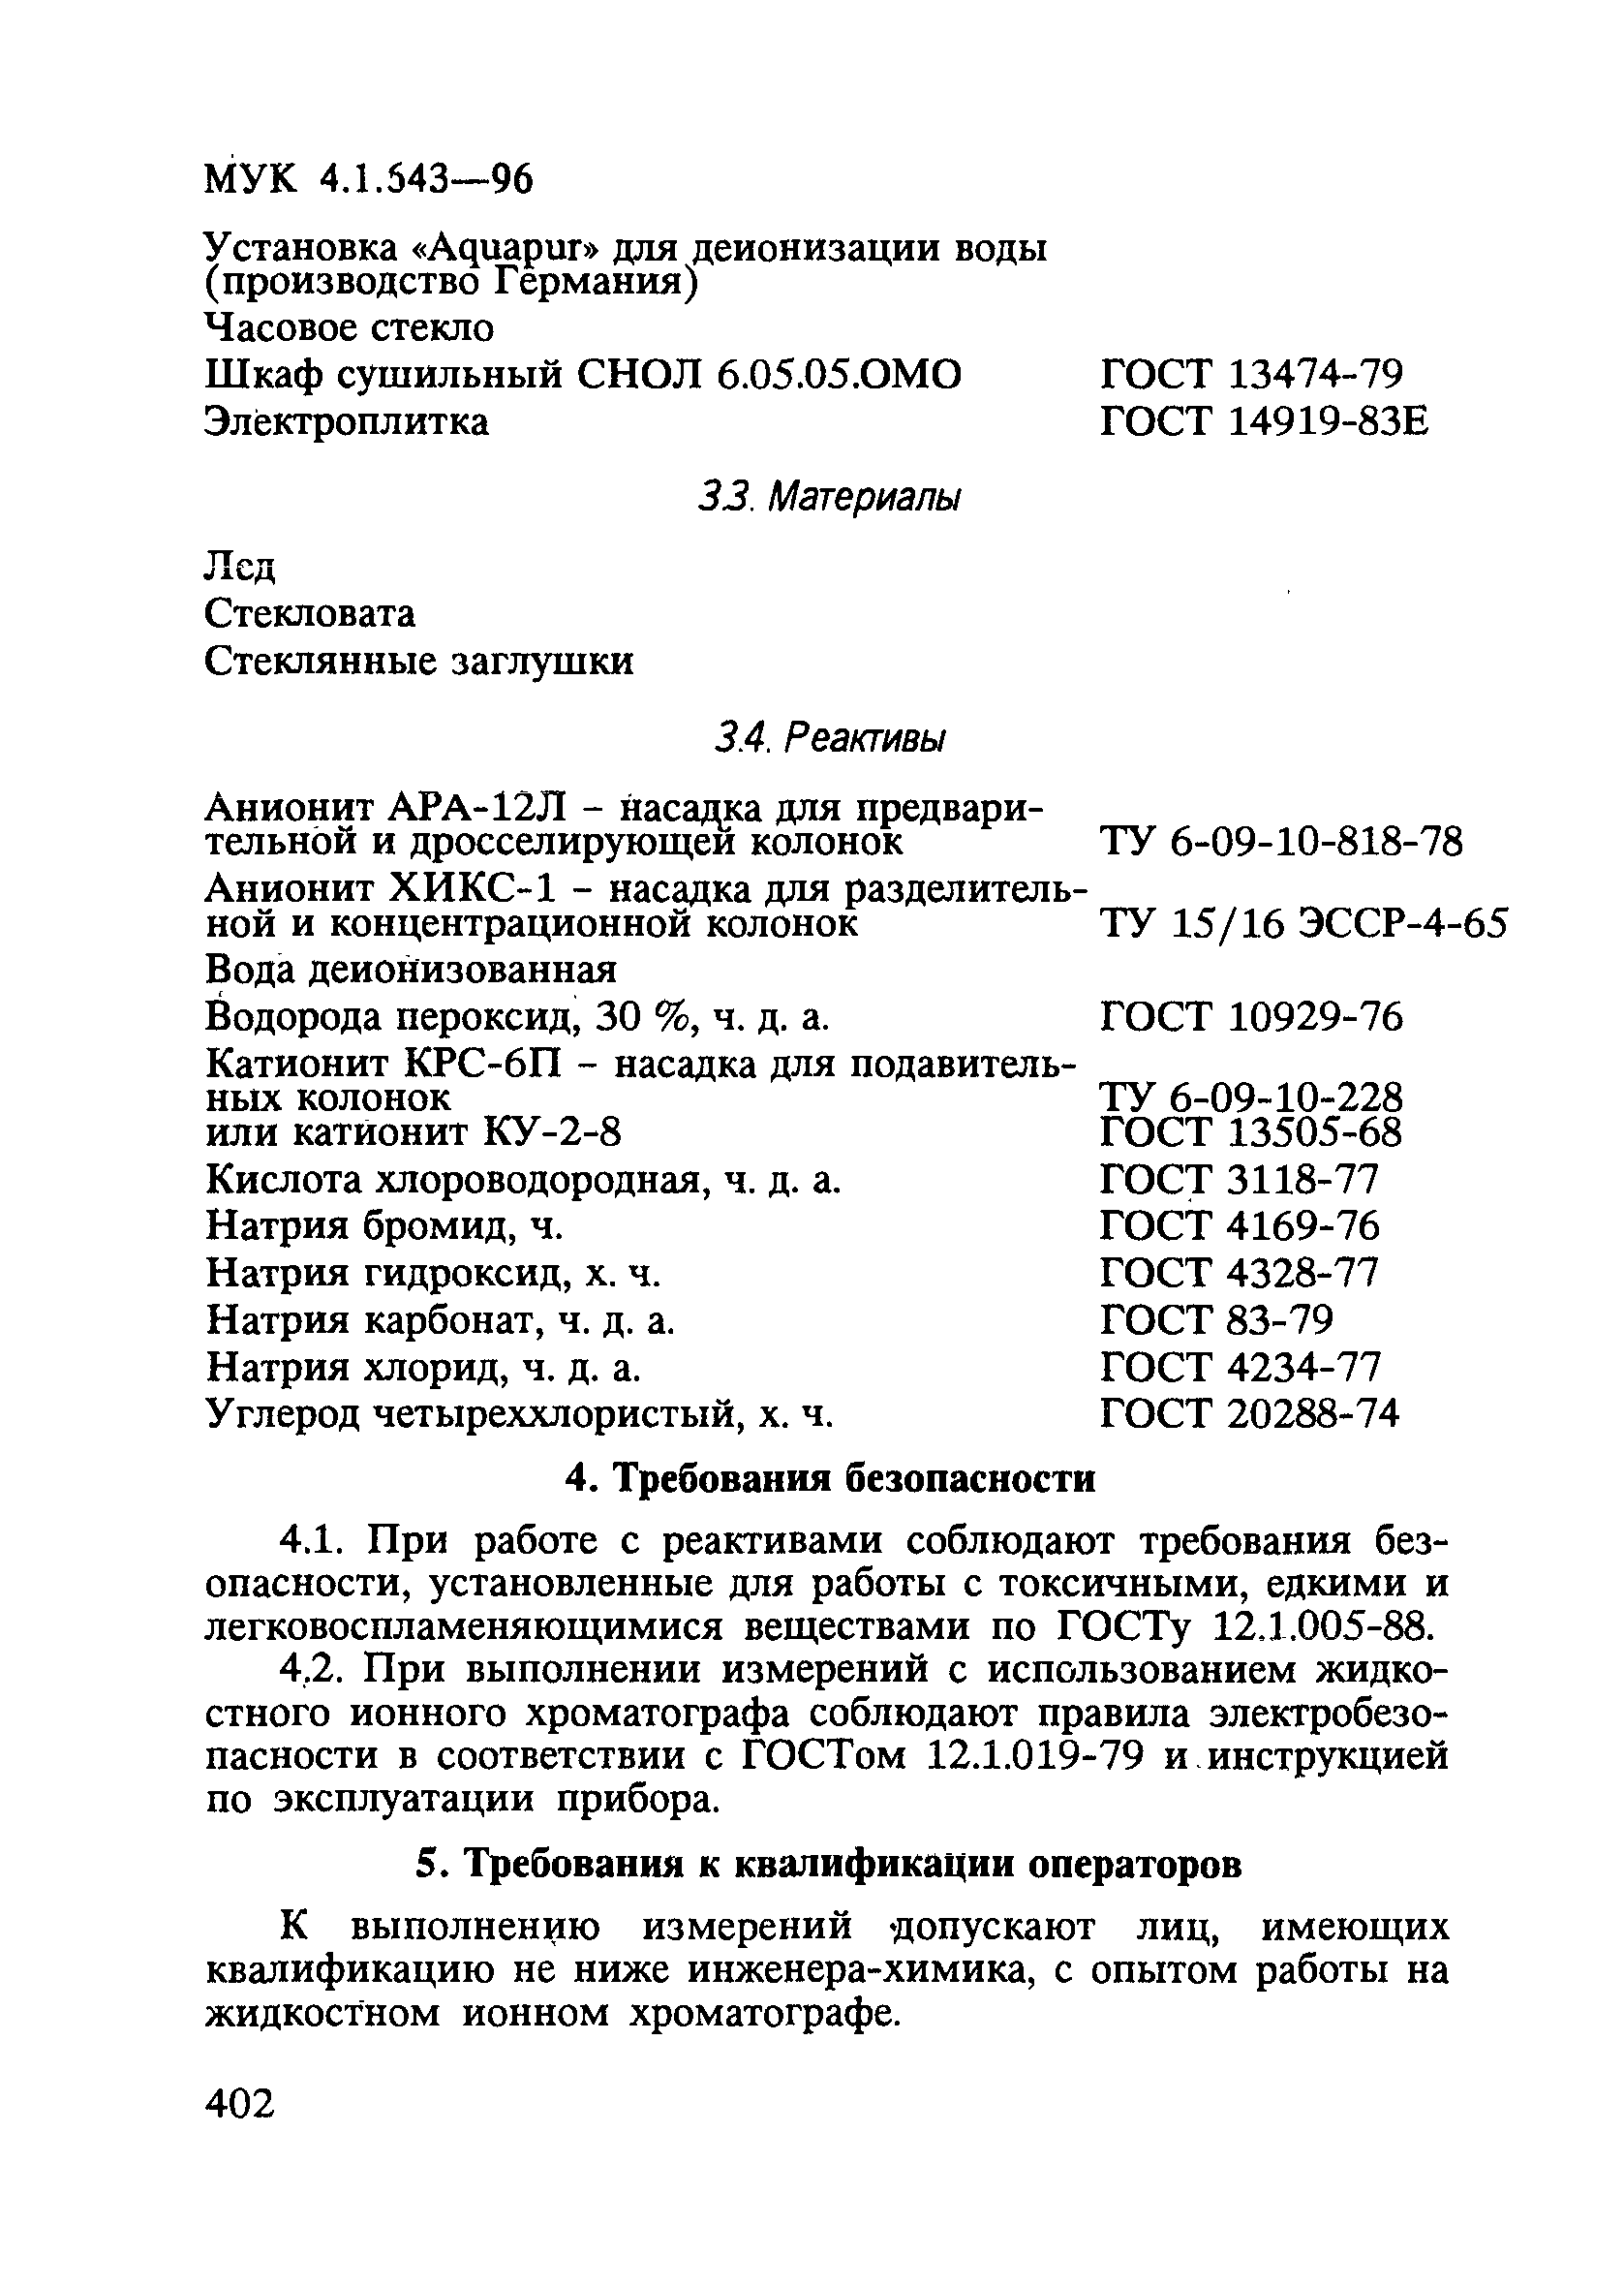 МУК 4.1.643-96